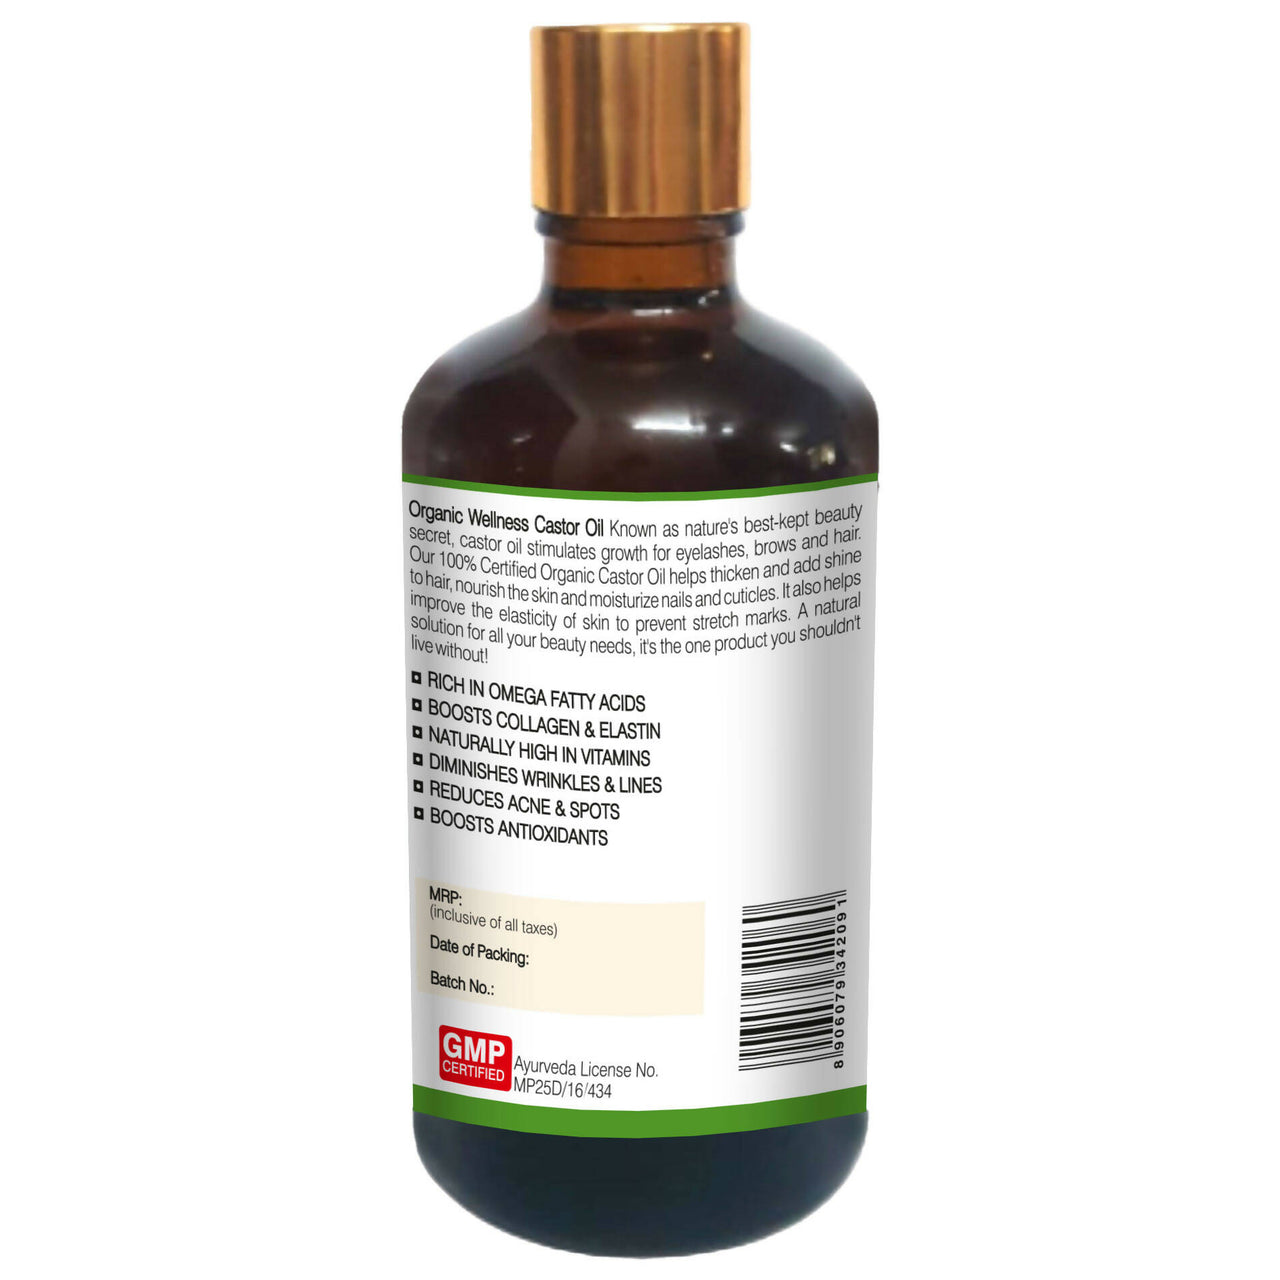 Organic Wellness Castor Oil Beaty Enhancer - Distacart